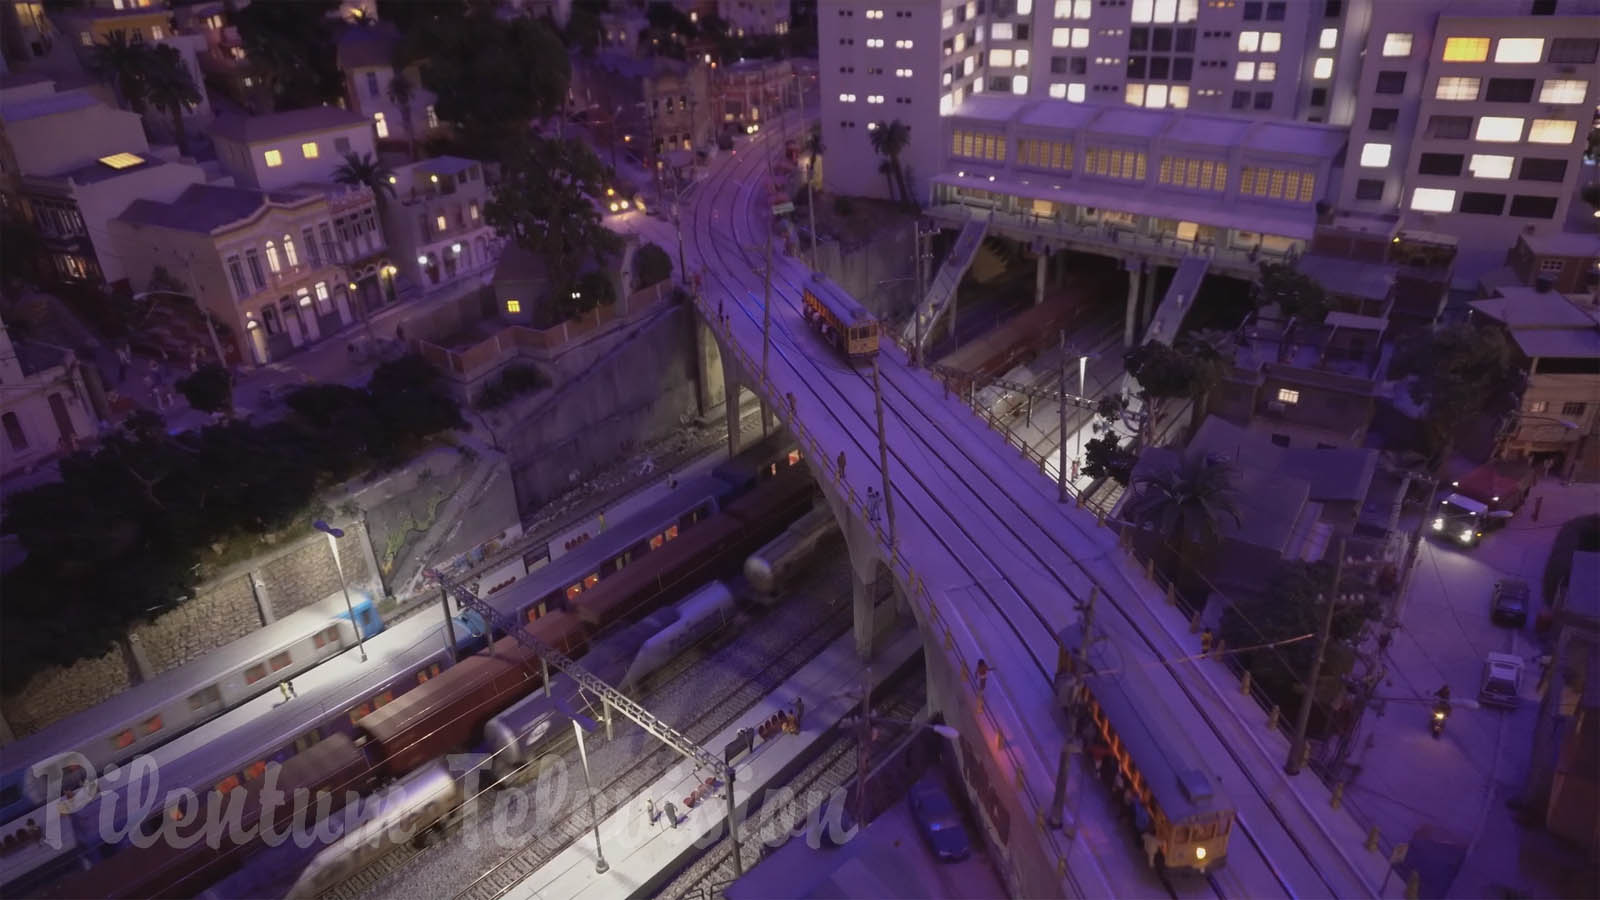 El fantástico diorama de la ciudad de Río de Janeiro en Brasil: Magnífica maqueta de tren en escala HO